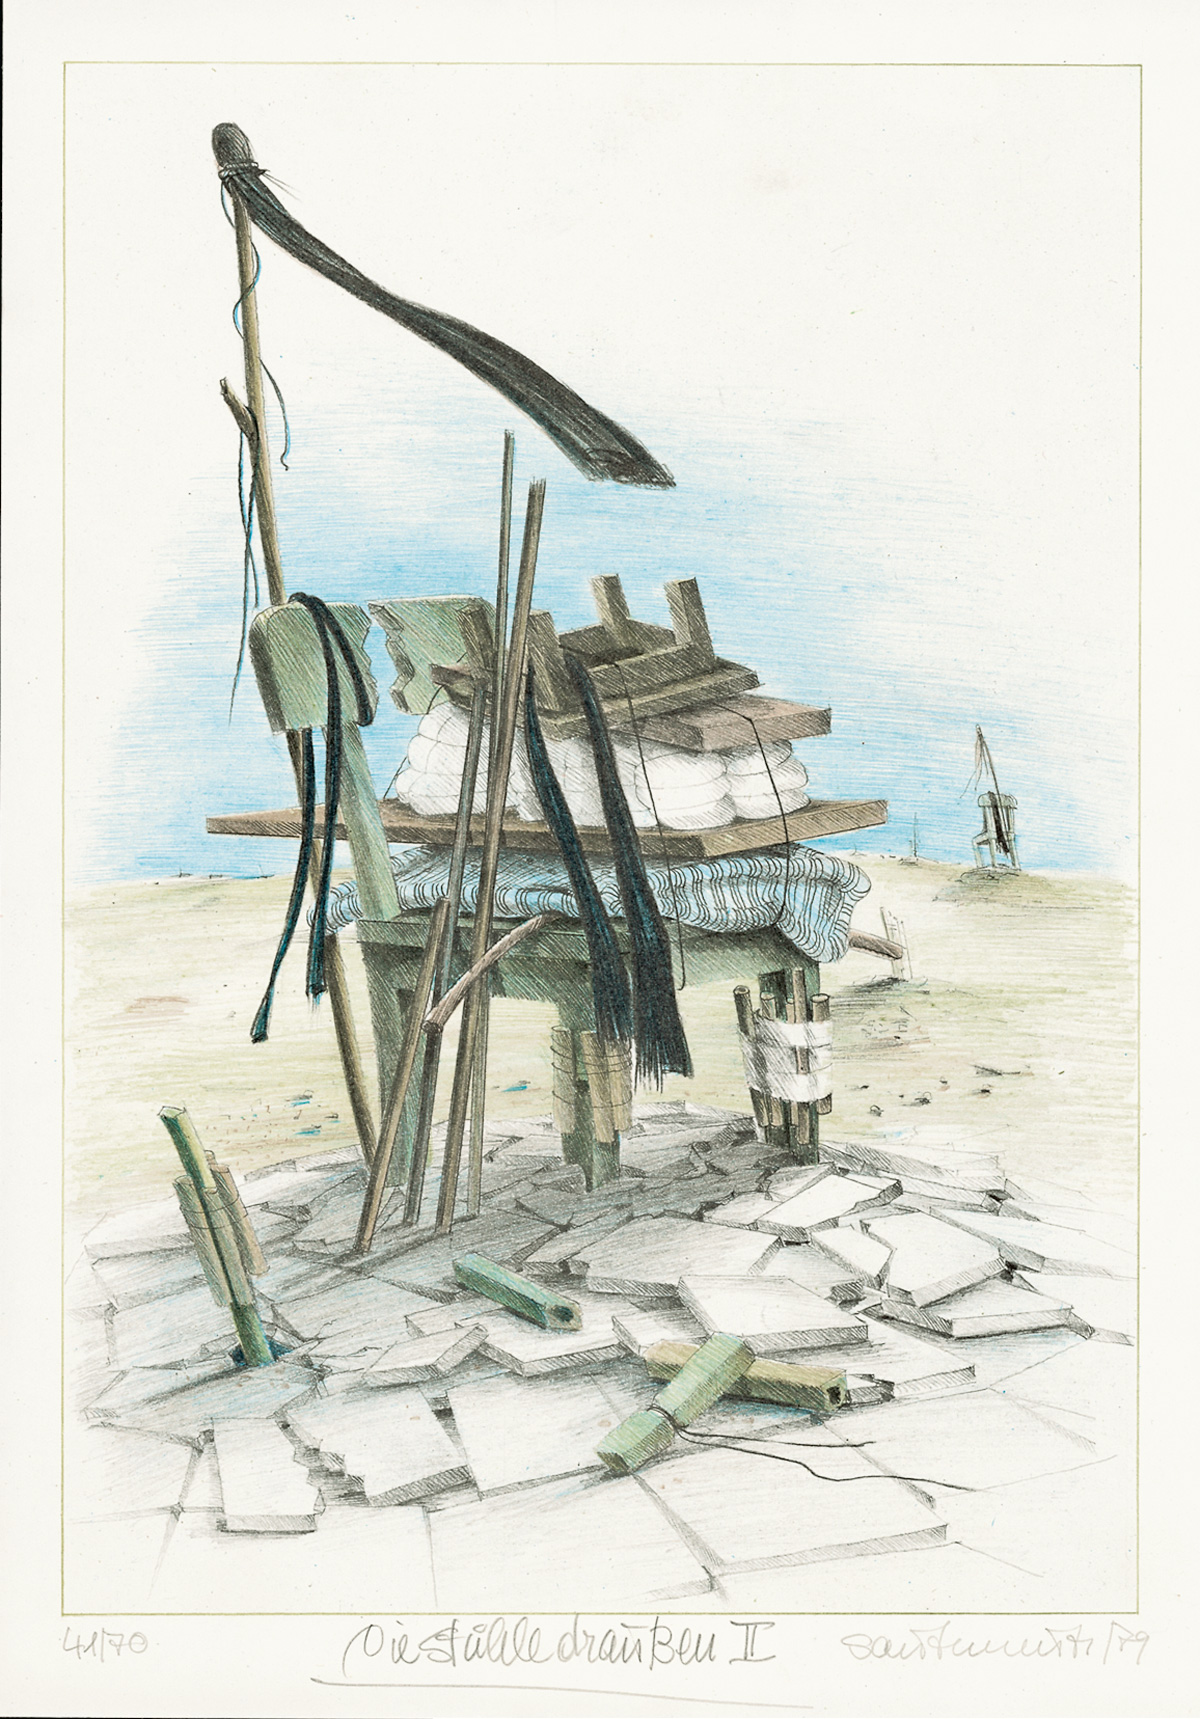 Die Stuehle draussen III, 1979, Lithographie, 31x25cm